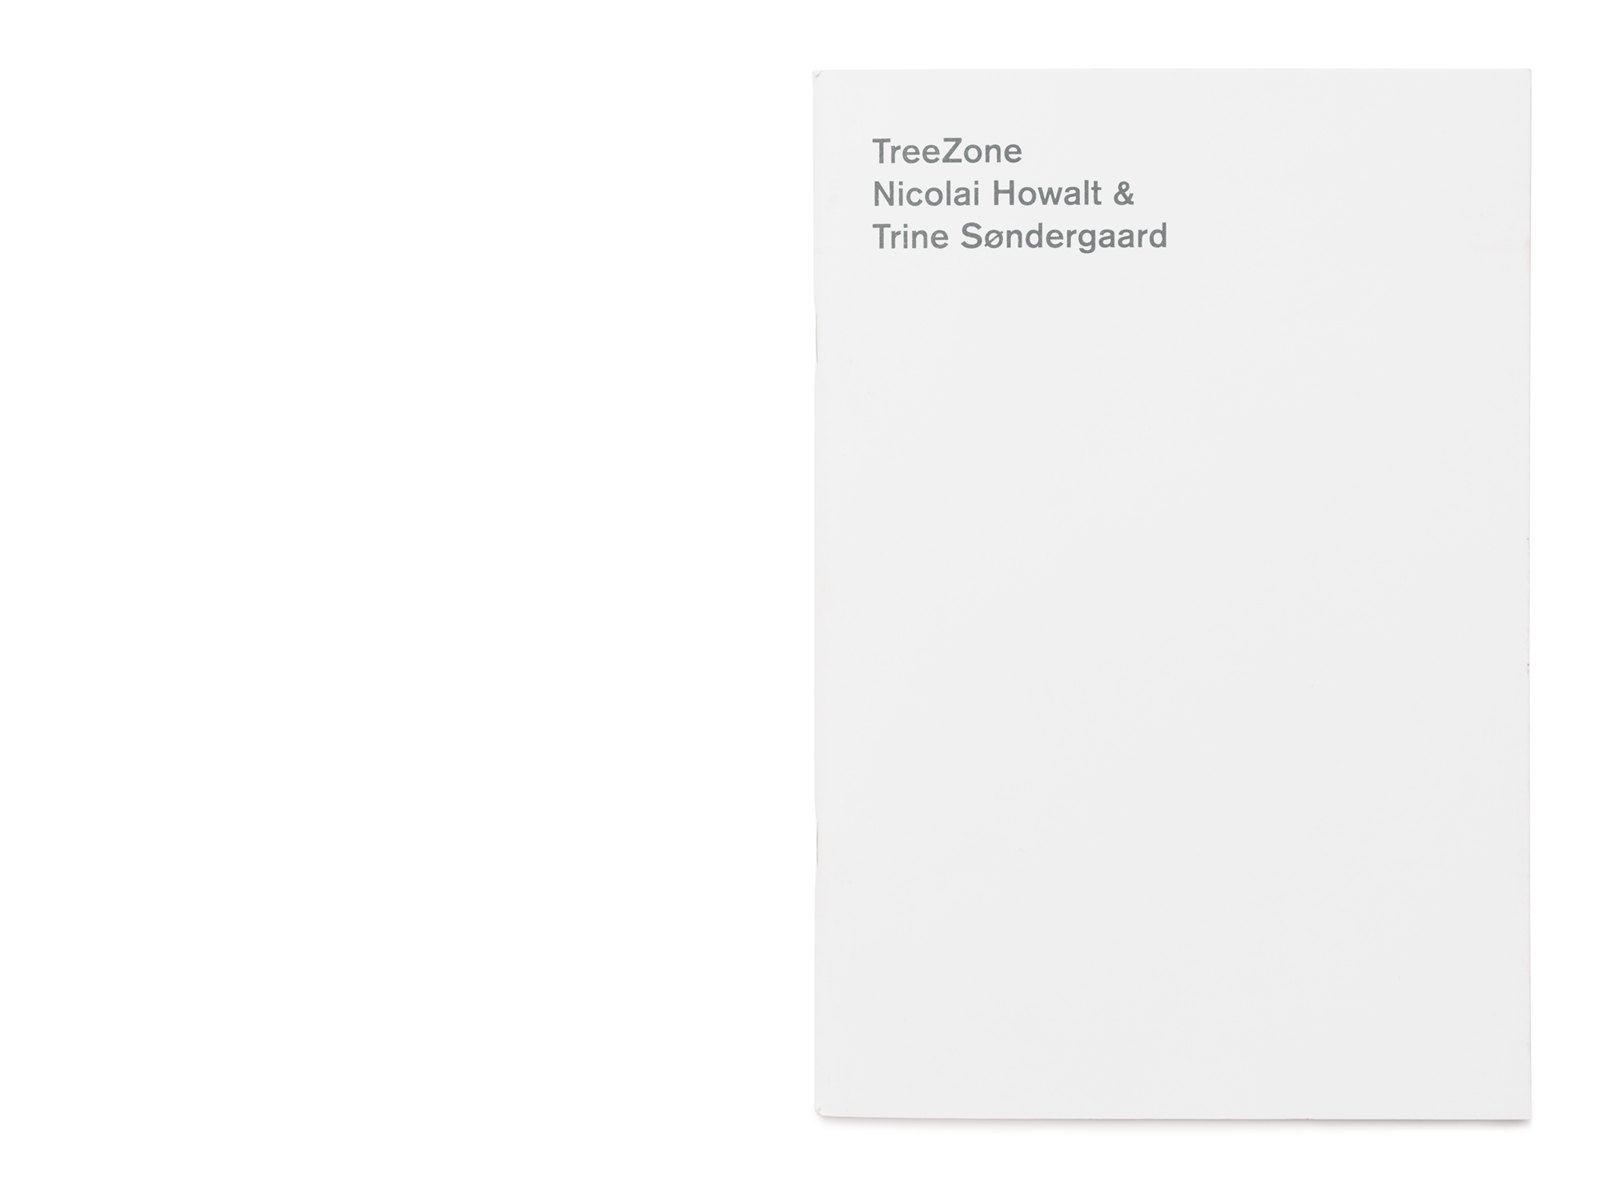 Tree Zone booklet by artists Nicolai Howalt and Trine Søndergaard